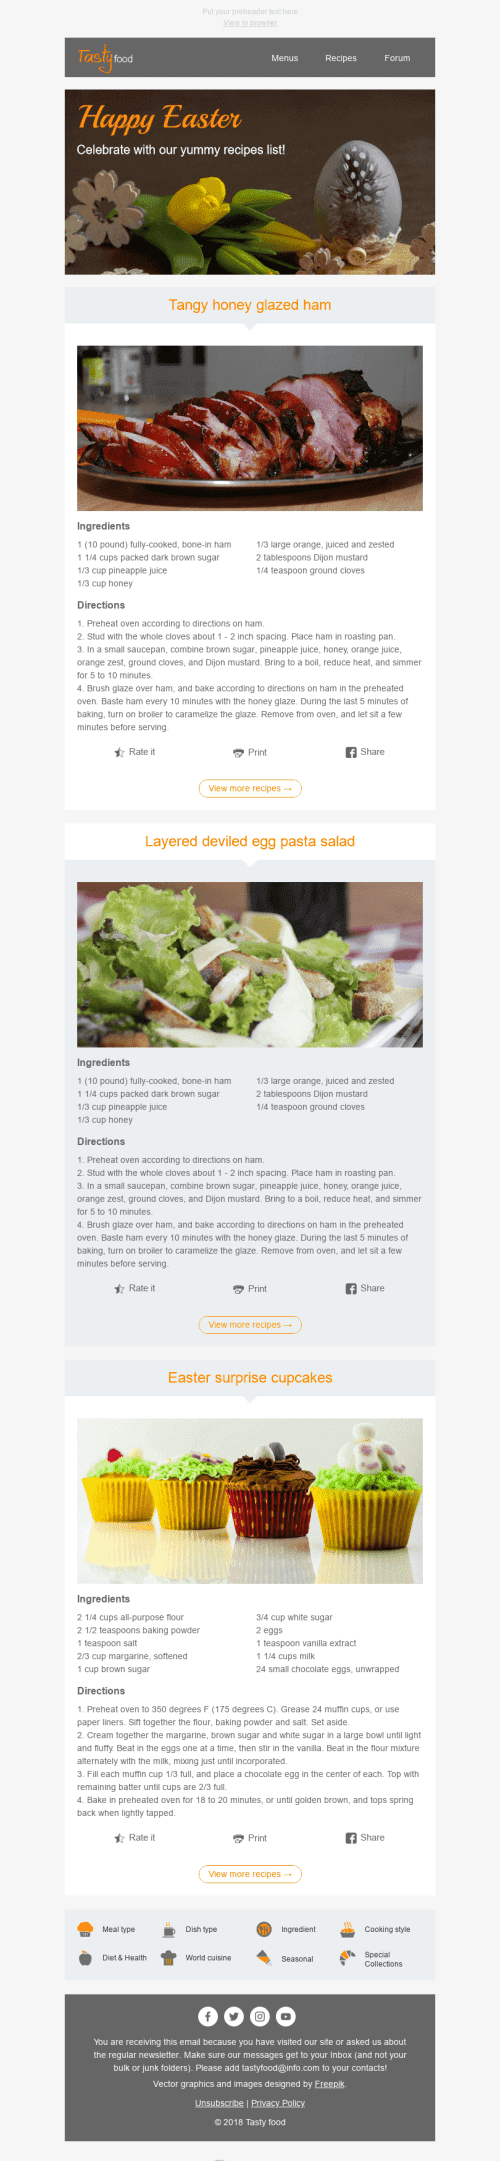 Plantilla de correo electrónico "Las mejores recetas" de Semana Santa para la industria de Gastronomía Vista de móvil